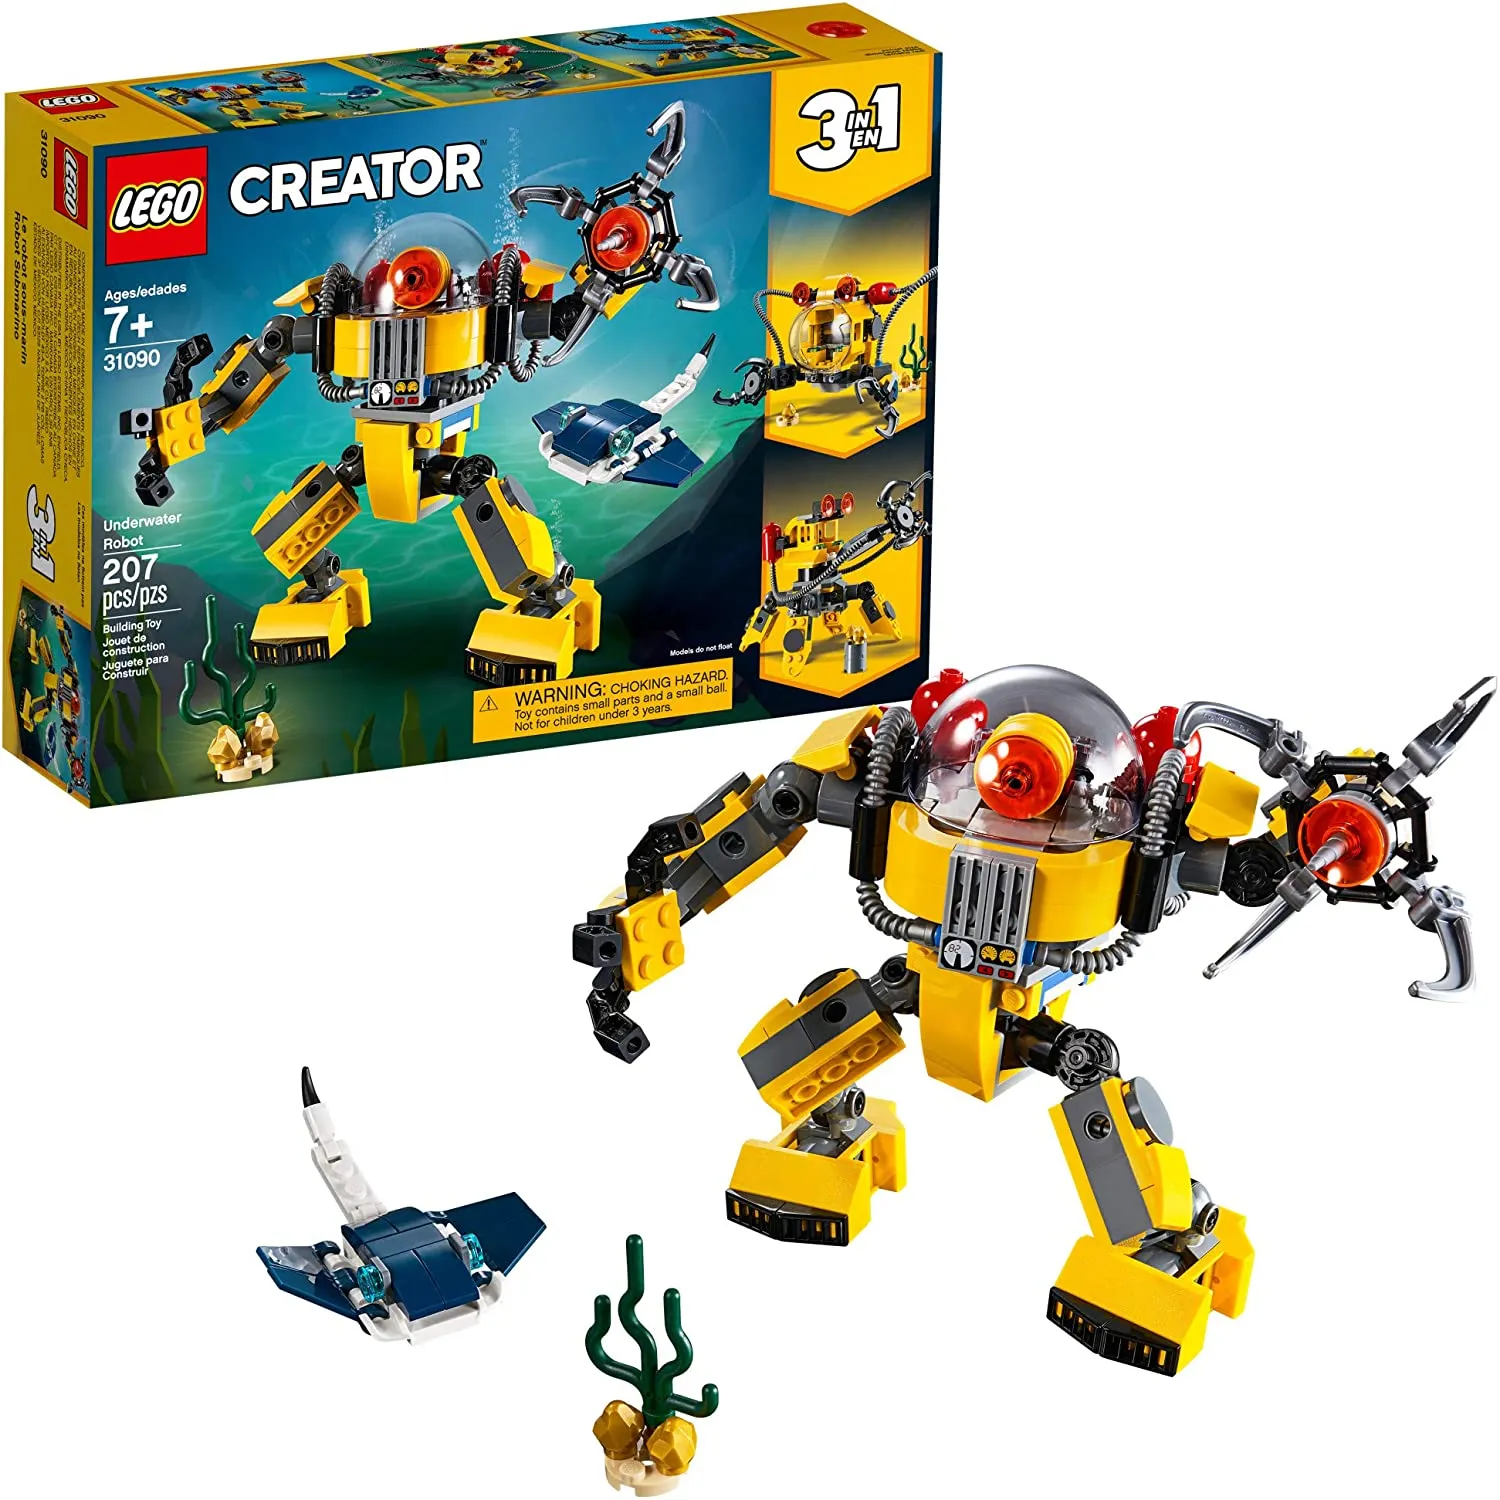 Bộ xếp hình LEGO Creator 3 trong 1 Robot dưới nước 31090 (207 miếng)